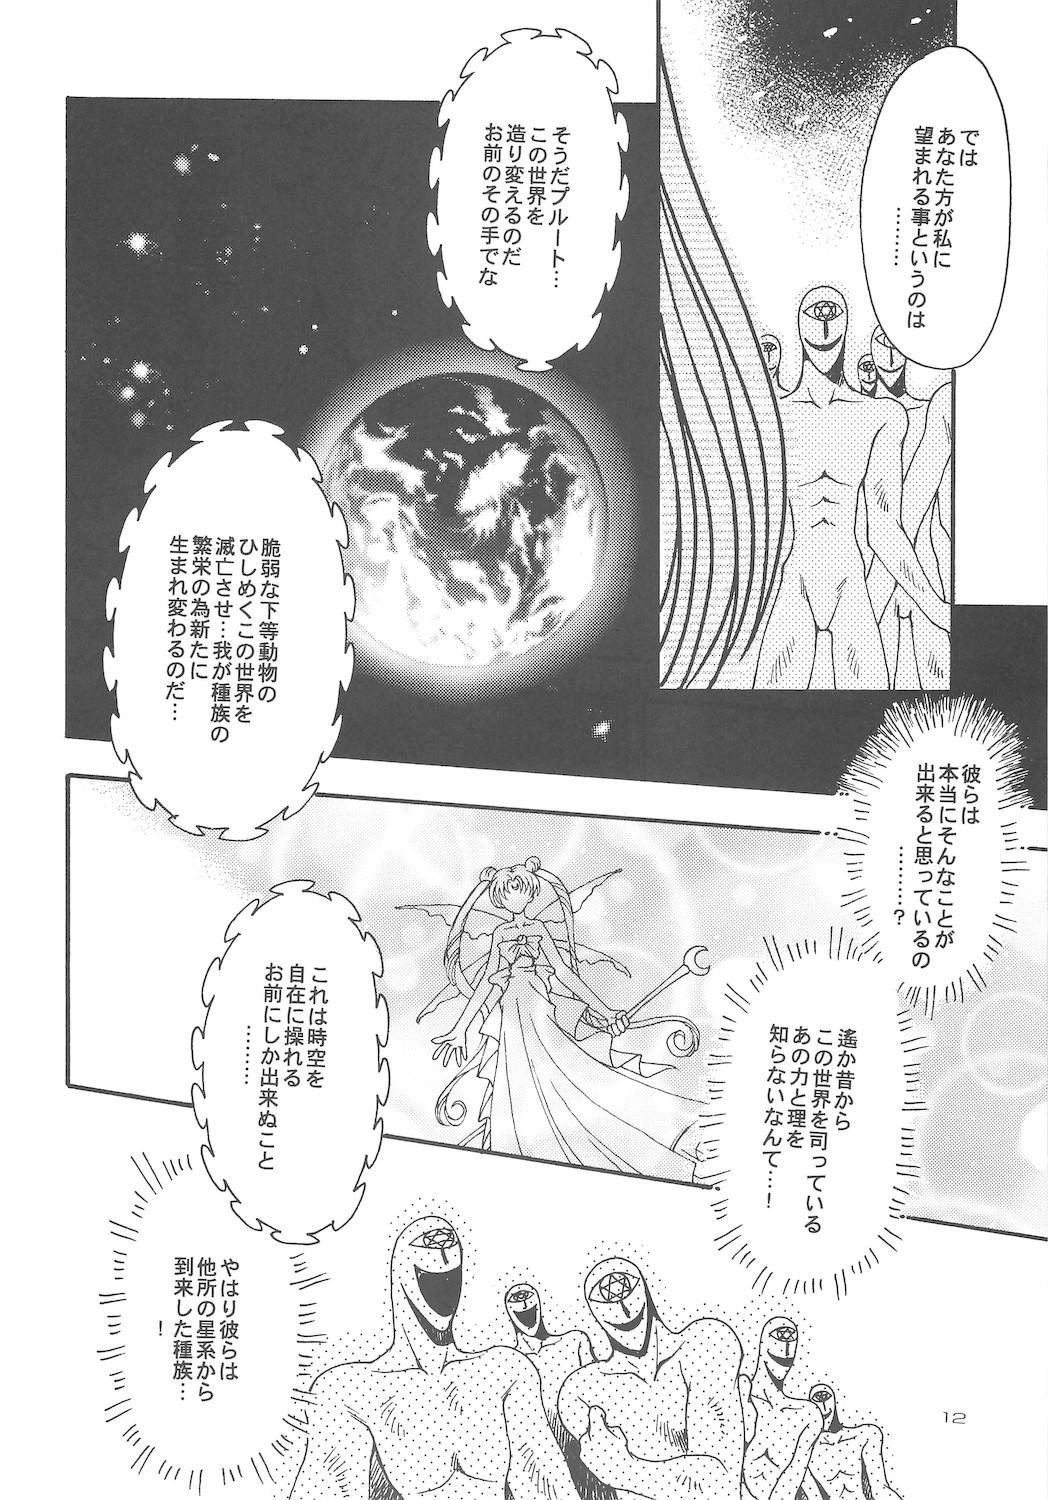 Retro Owaru Sekai dai 4 shou - Sailor moon Publico - Page 12